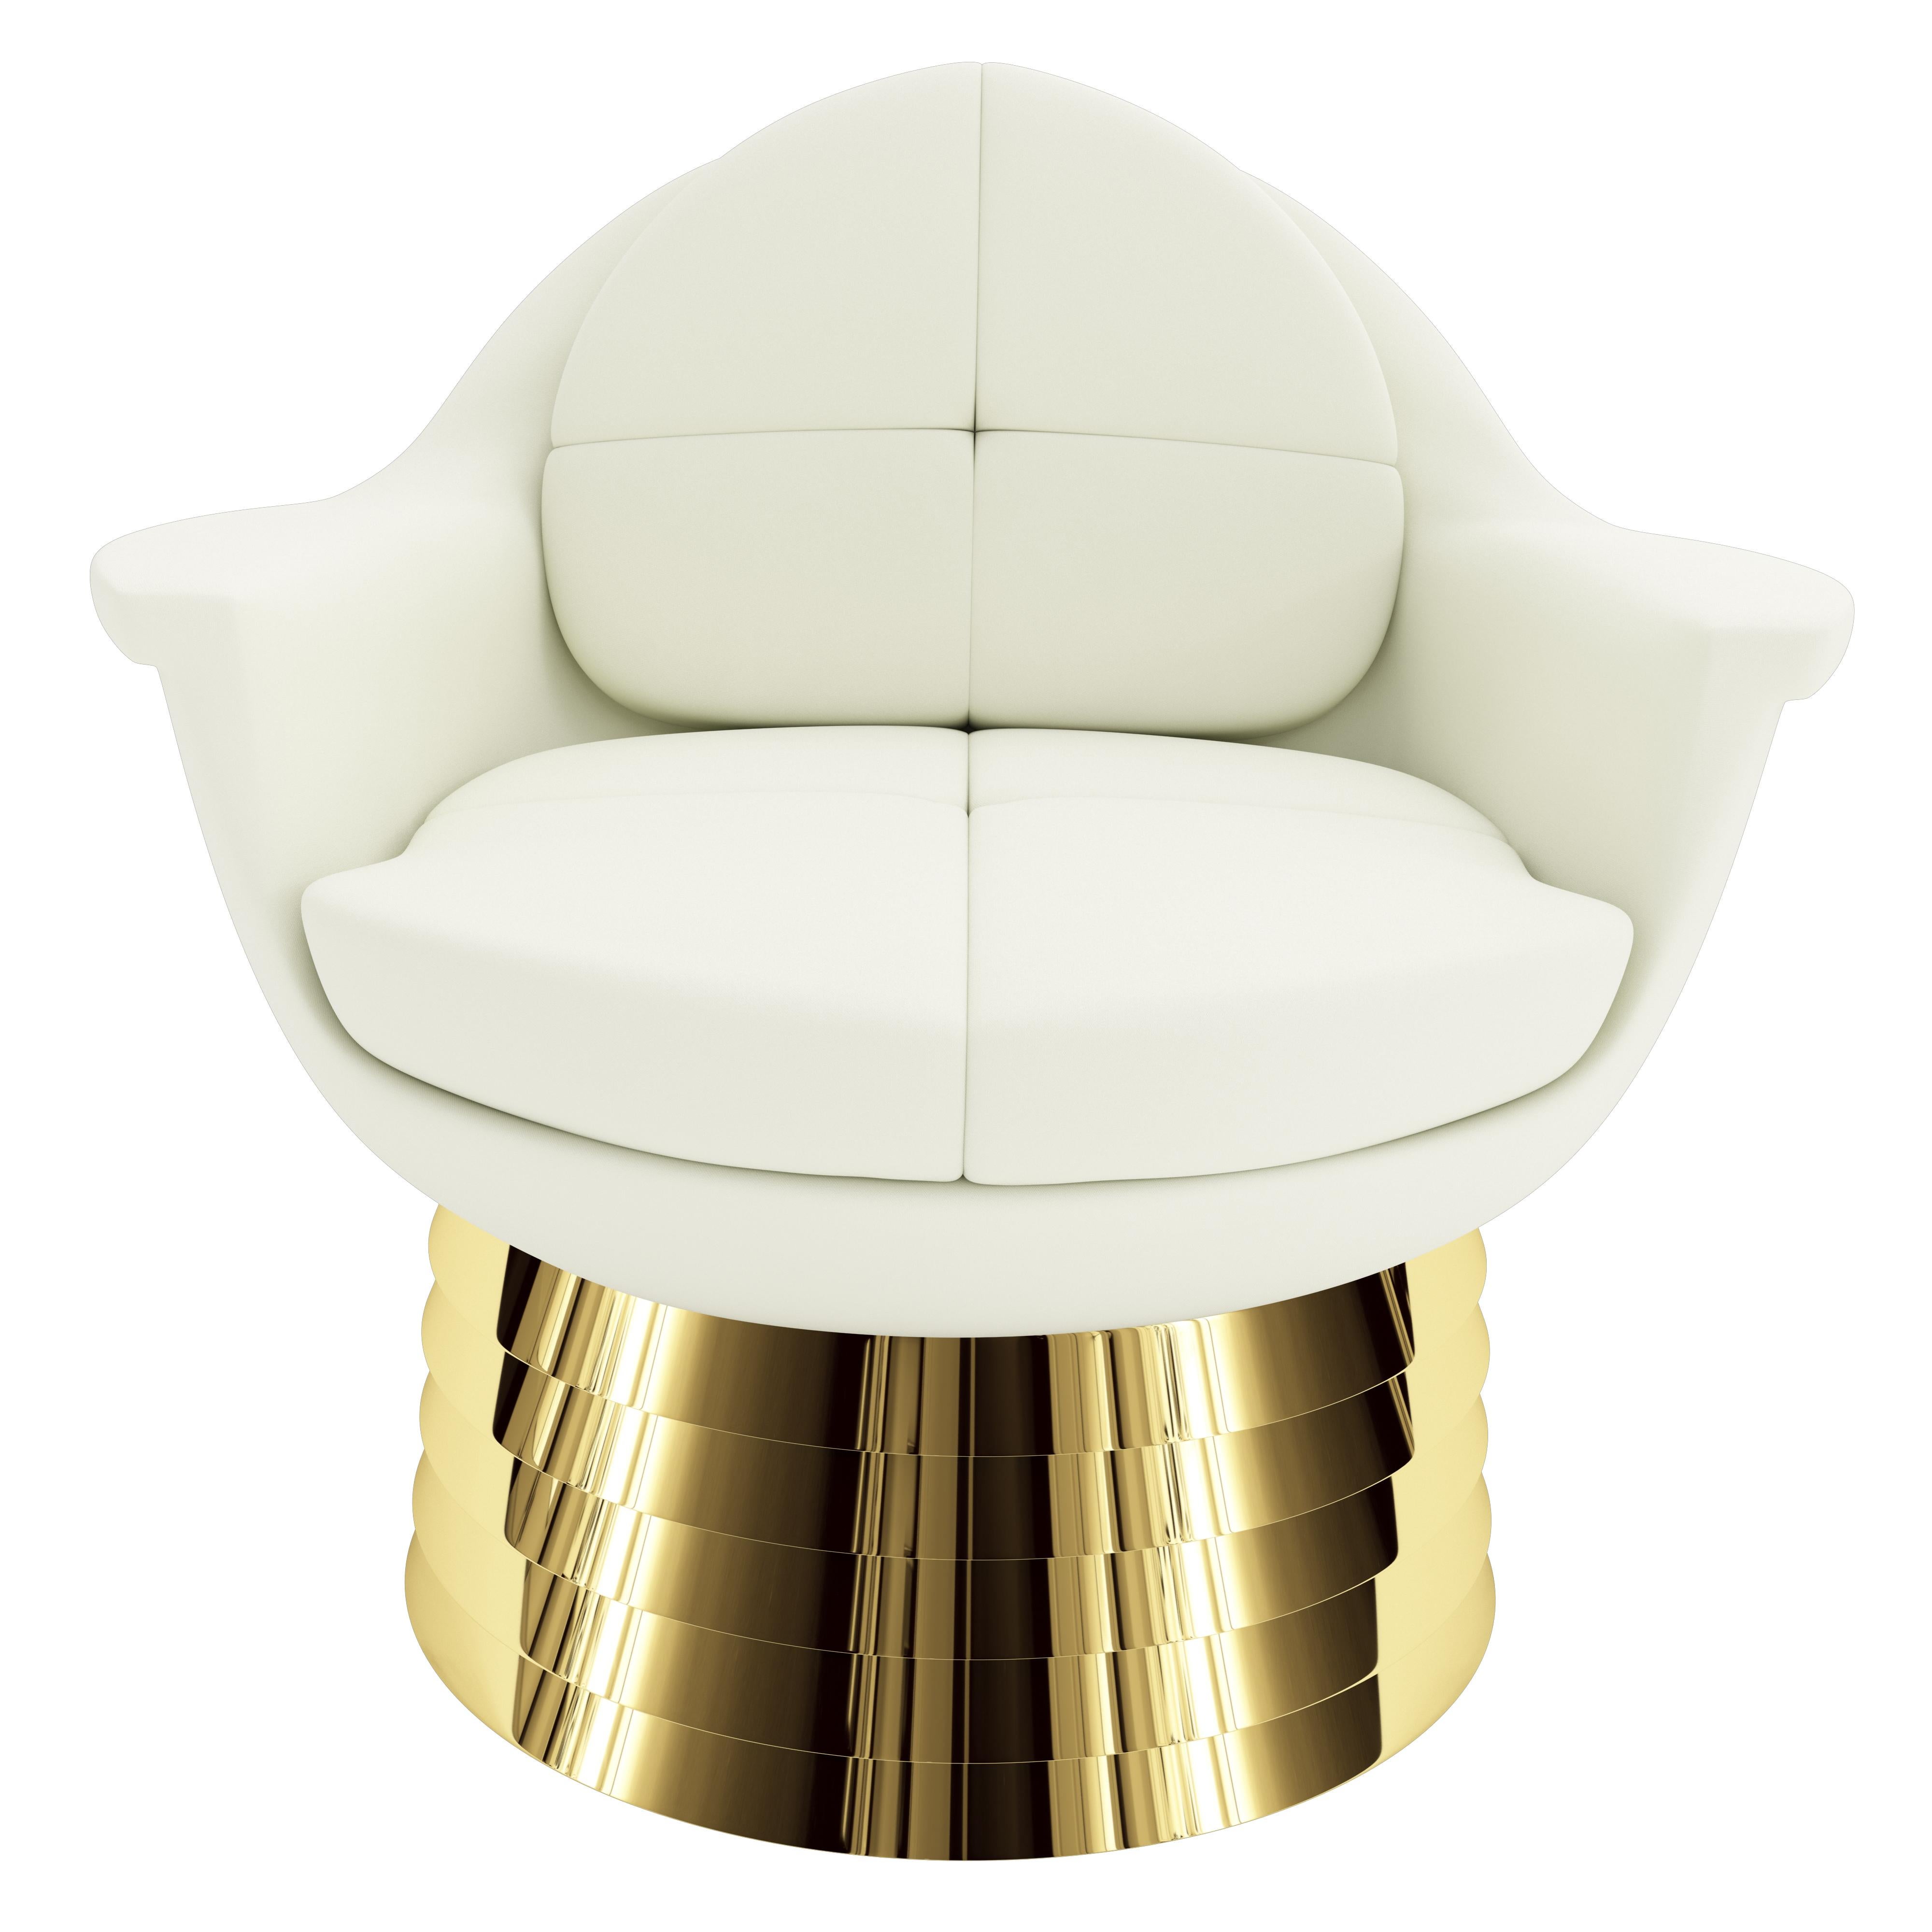 Der Iris Lounge Stuhl wurde nach der Iris des menschlichen Auges benannt. Wenn man den Sessel direkt betrachtet, spiegeln die flügelförmigen Armlehnen und die runde Form die Symmetrie des Auges wider. Das Gestell besteht aus versetztem, poliertem